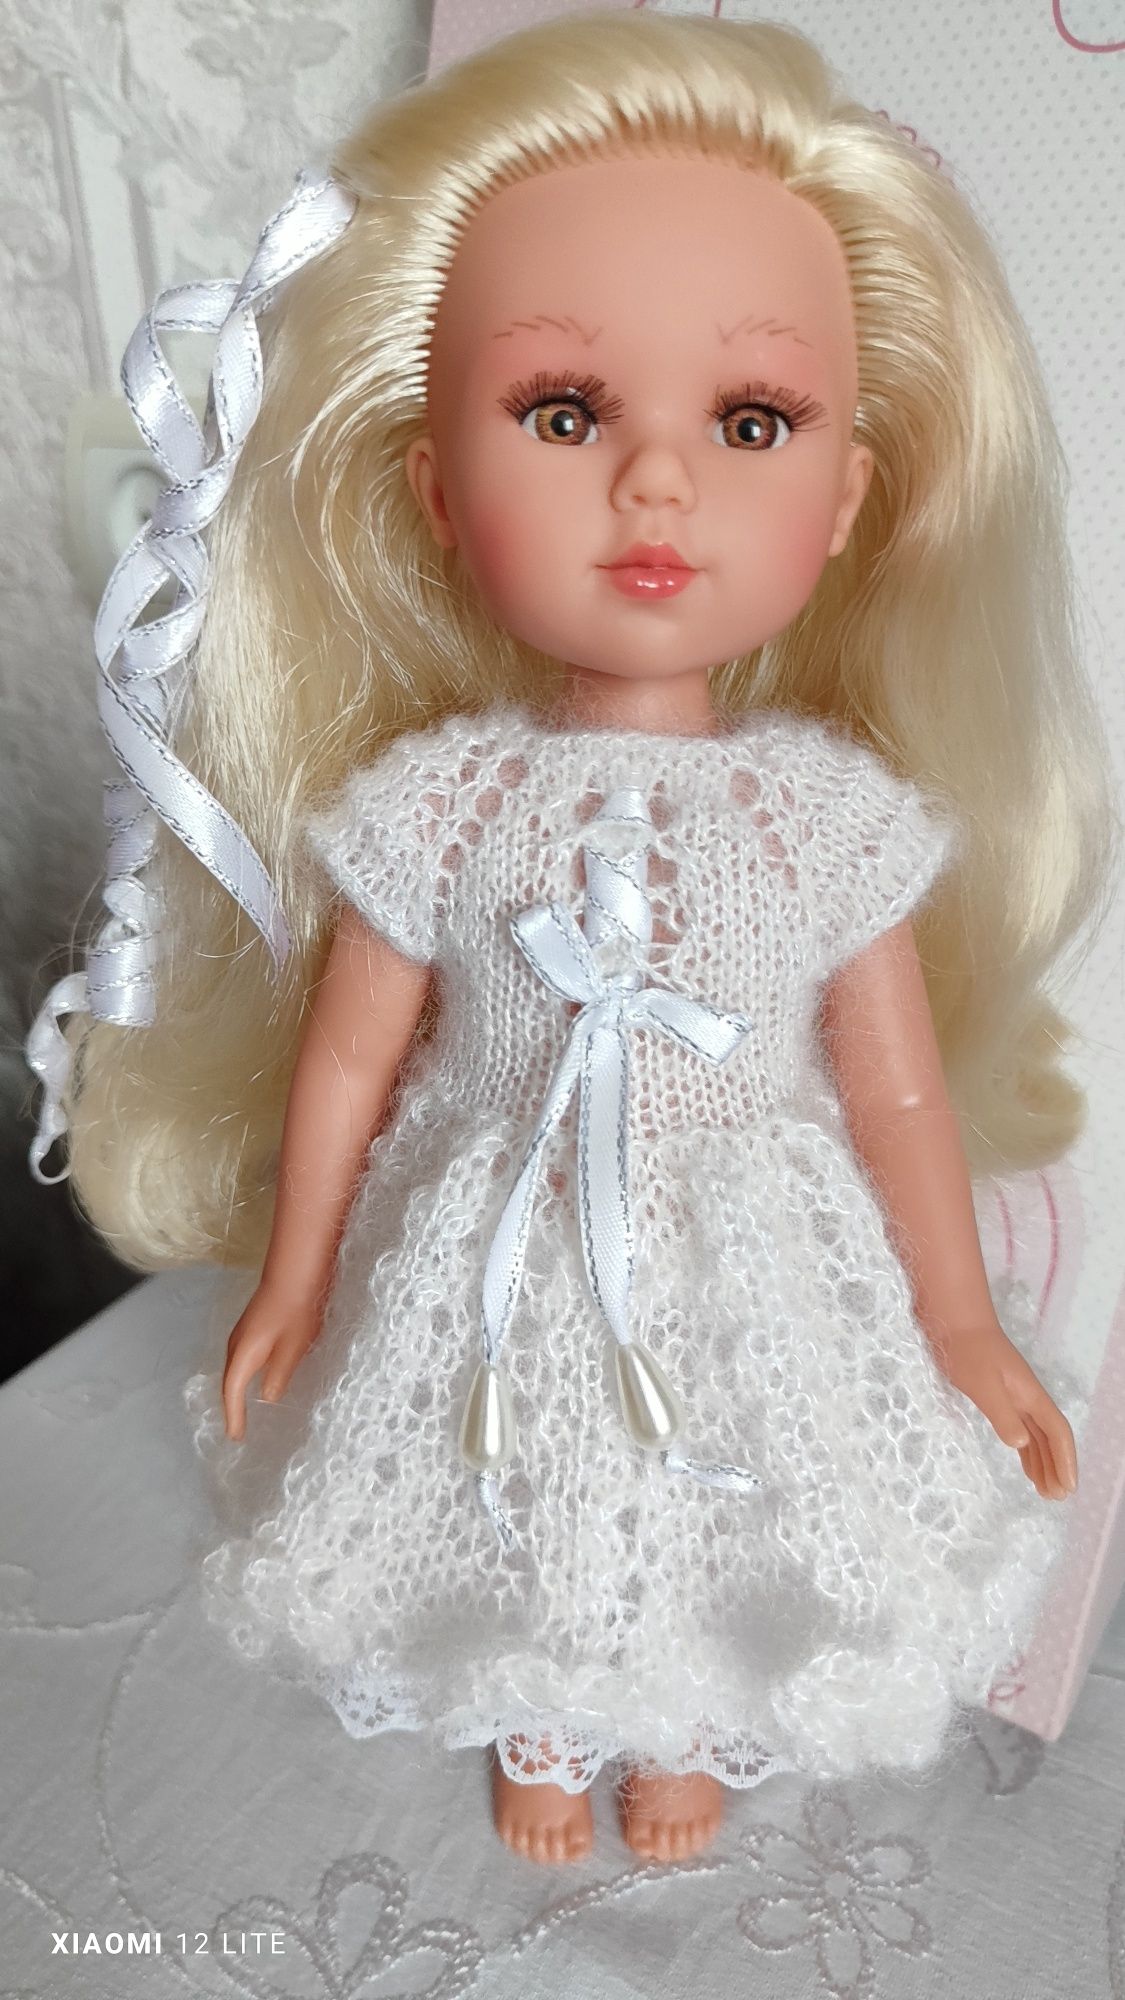 Кукла Лоренс Испания 31 см